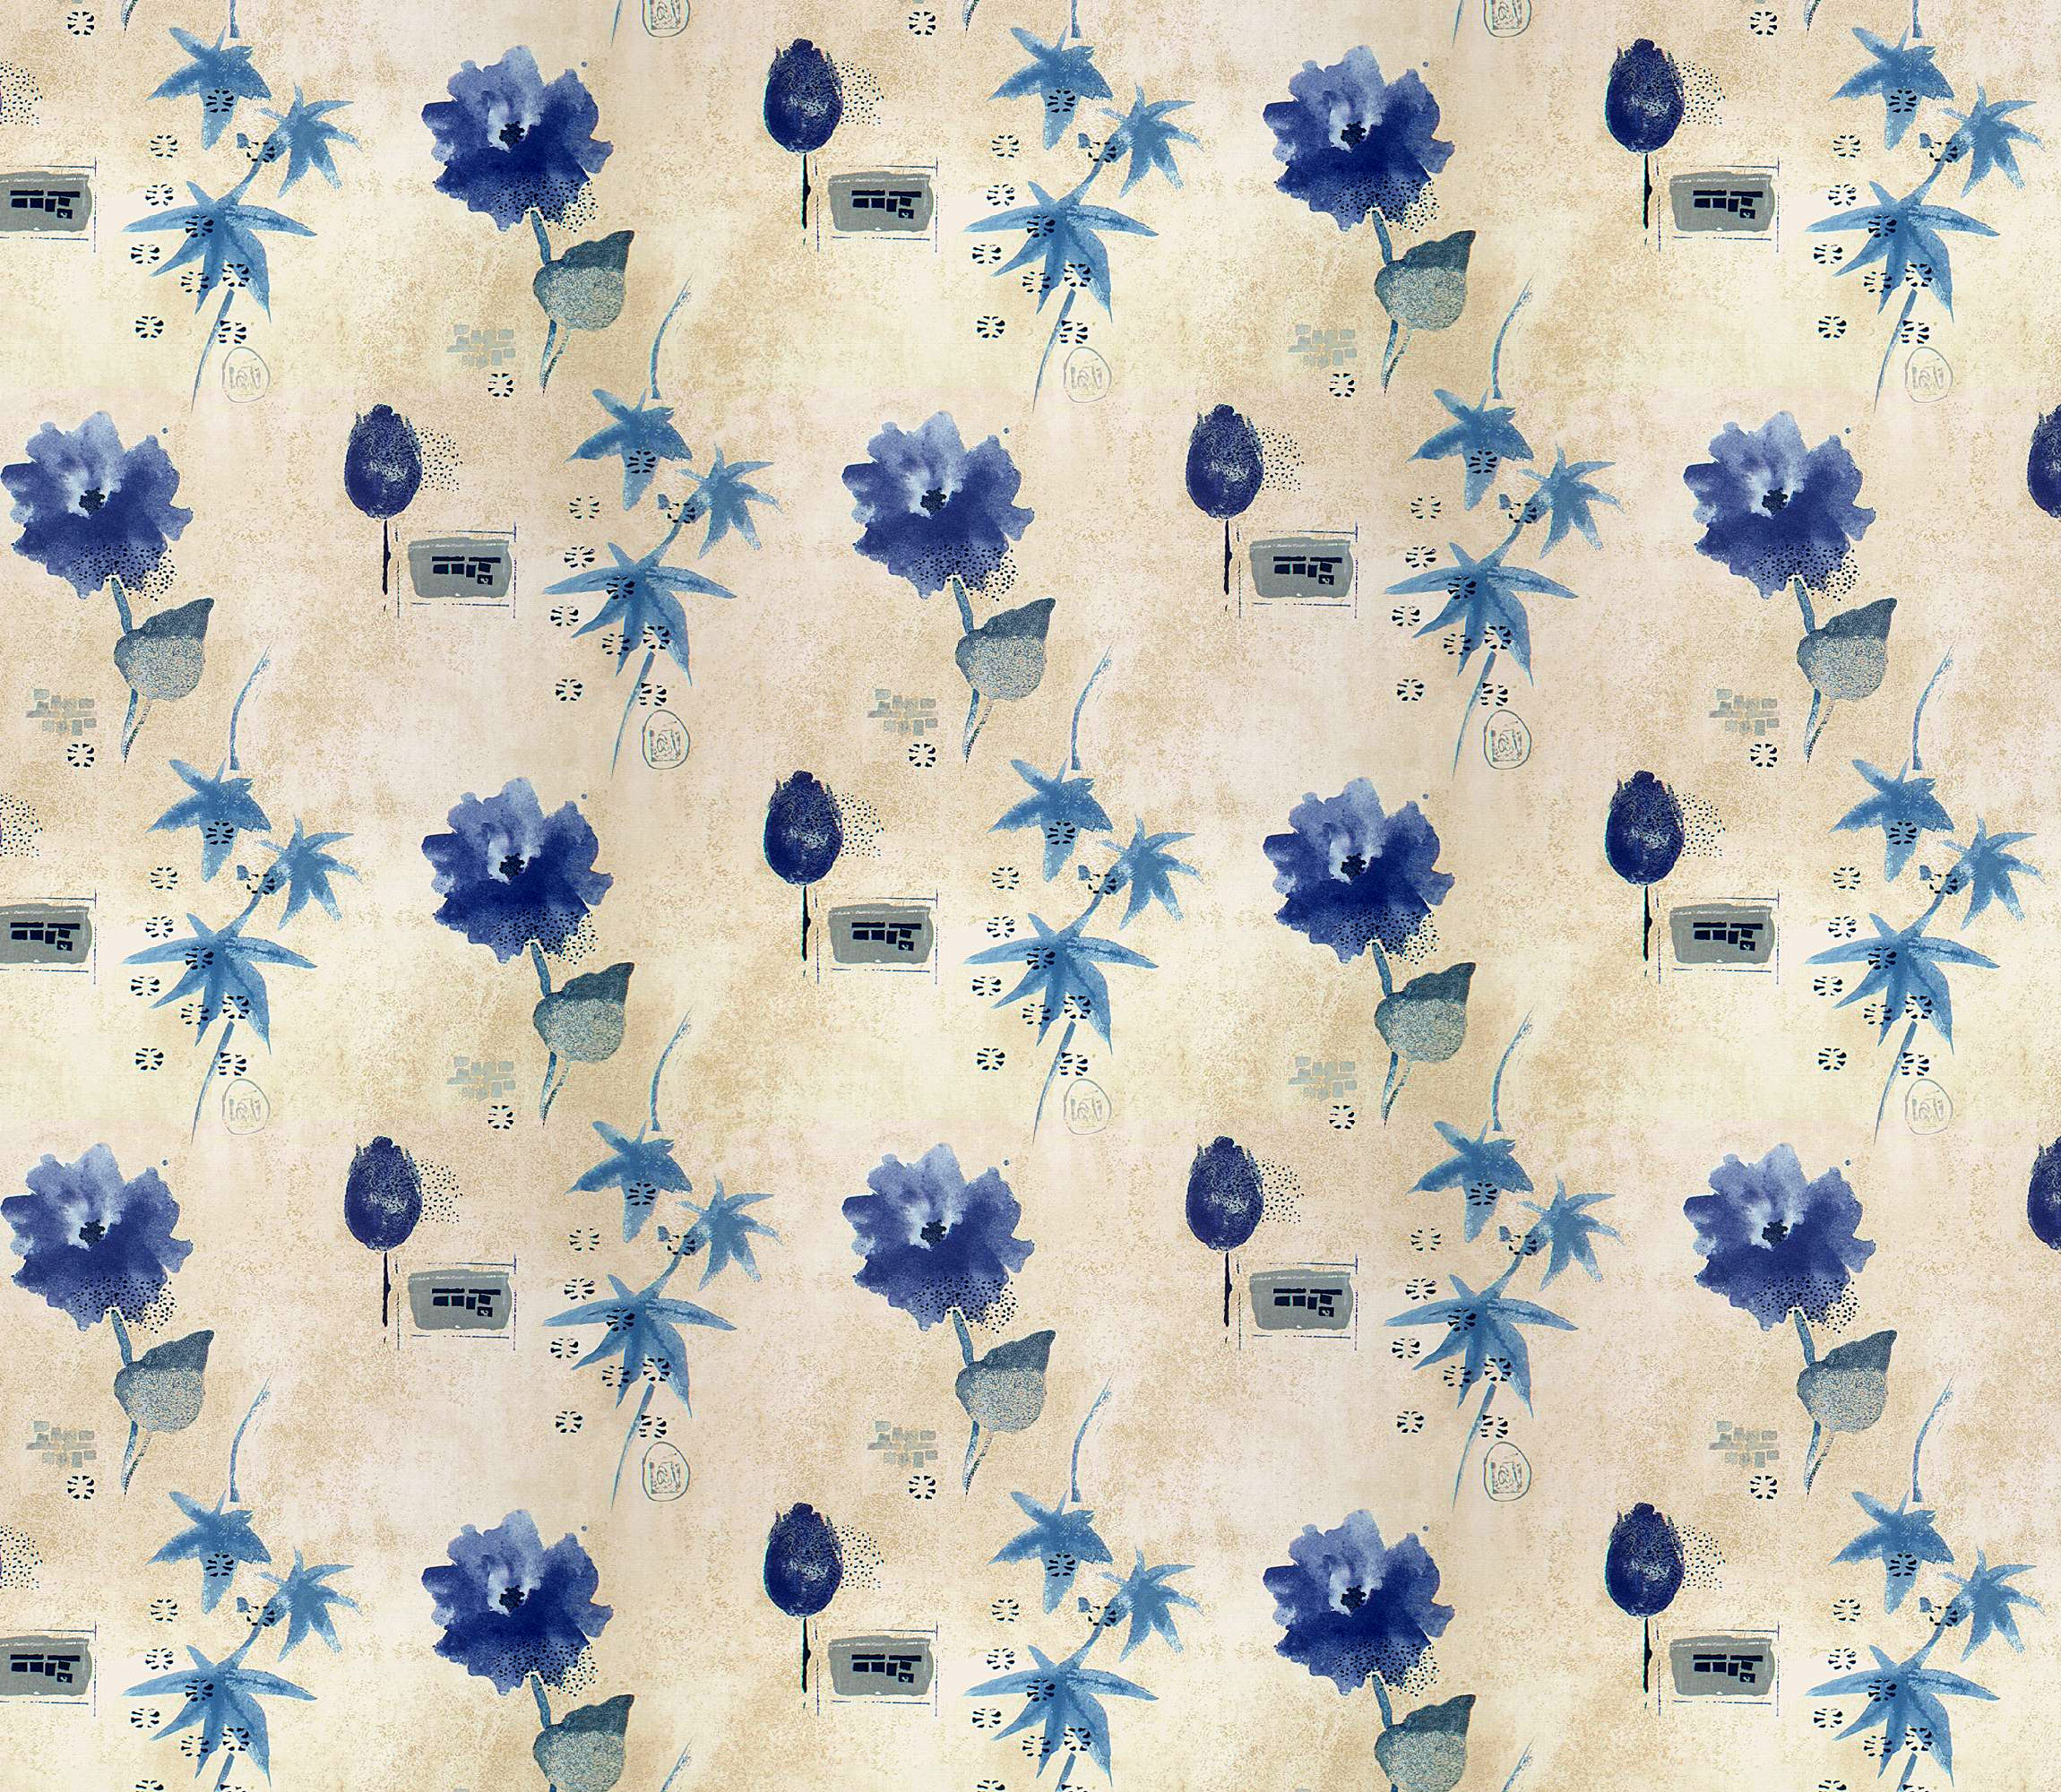 青い花のイラスト フリー素材 背景 壁紙no 332 青 布生地 水彩画風